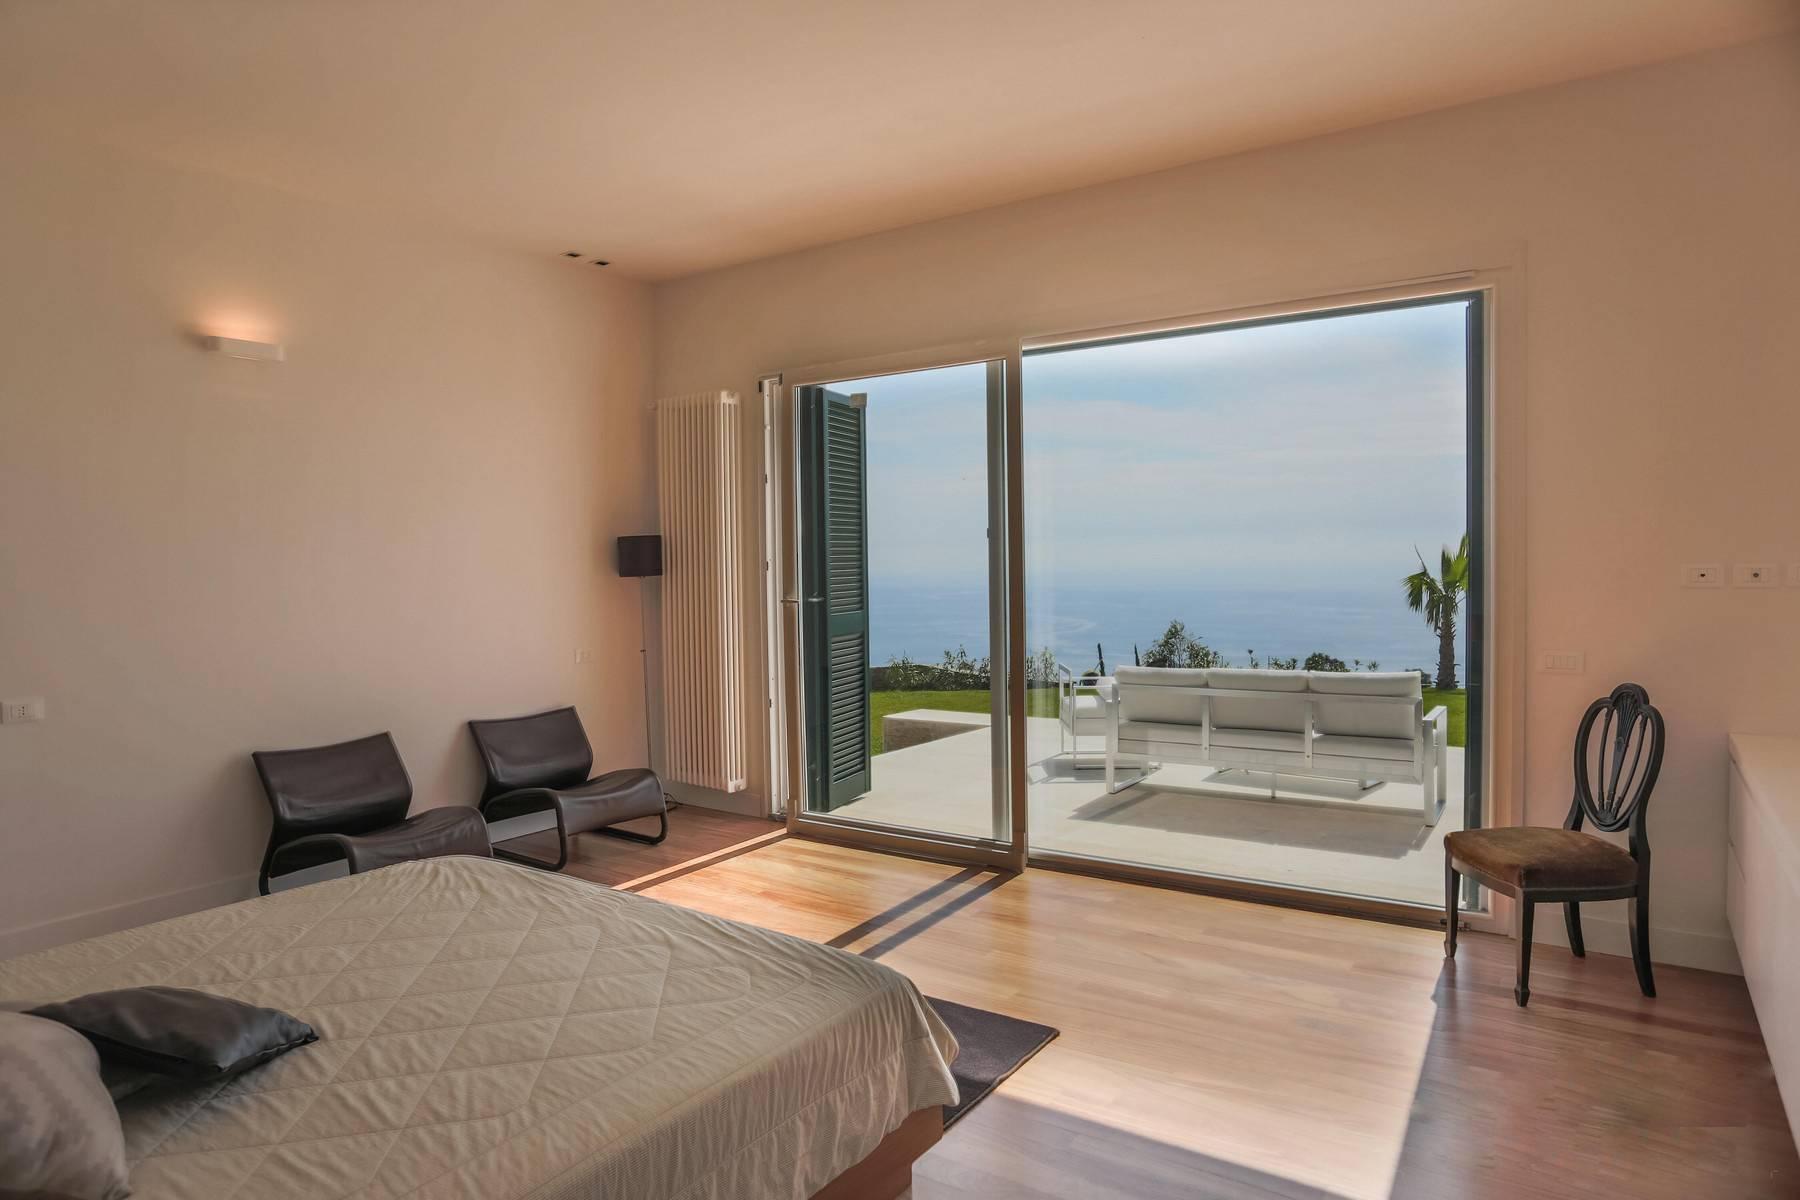 Gorgeous villa overlooking the sea - 10